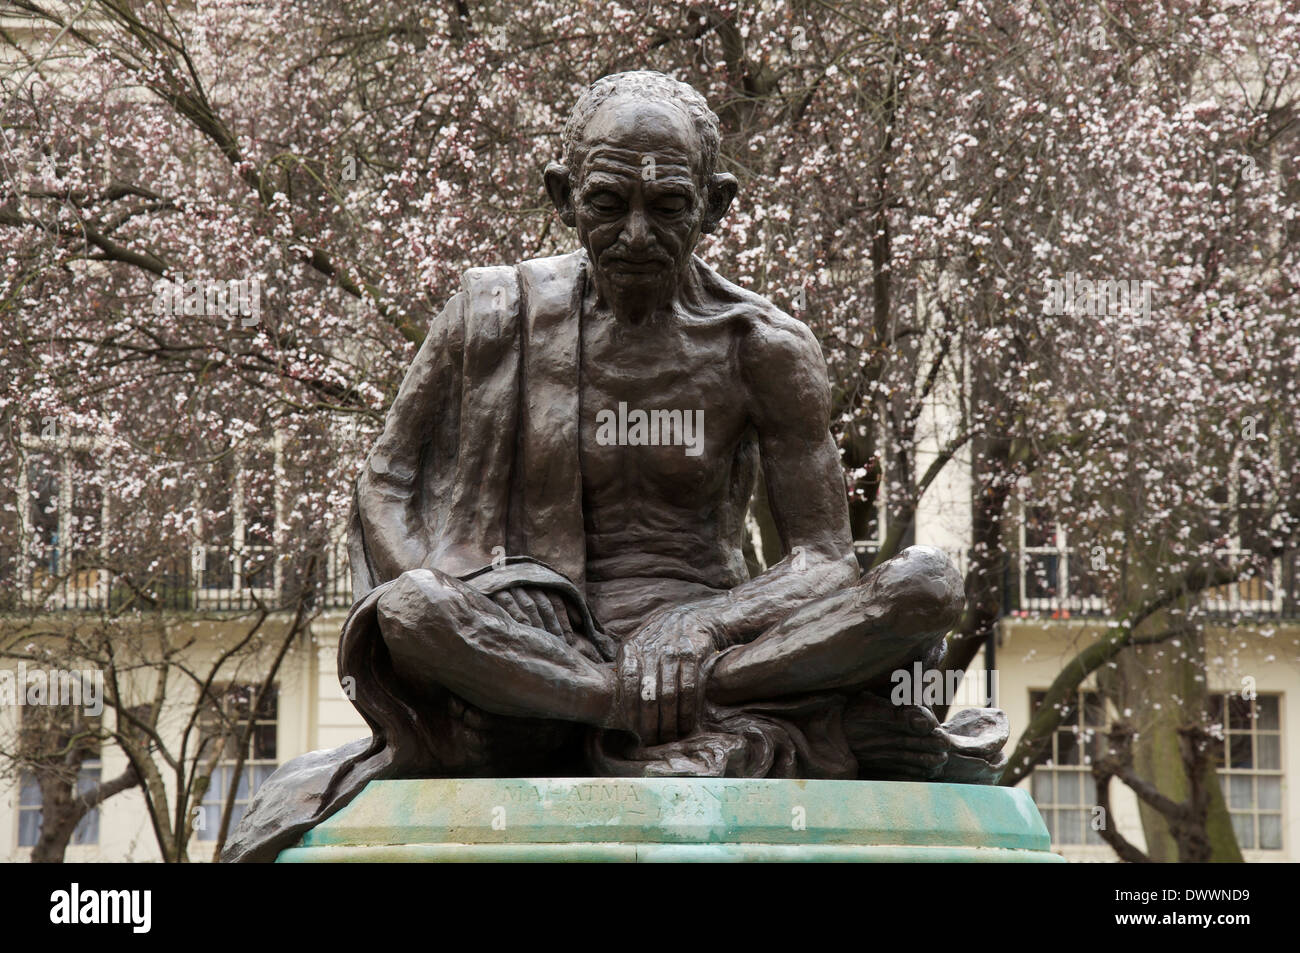 Eine Statue von Mahatma Gandhi, der Anführer der Indiens Kampf für die Unabhängigkeit vom britischen Mutterland. Tavistock Square, London, England, Vereinigtes Königreich. Stockfoto